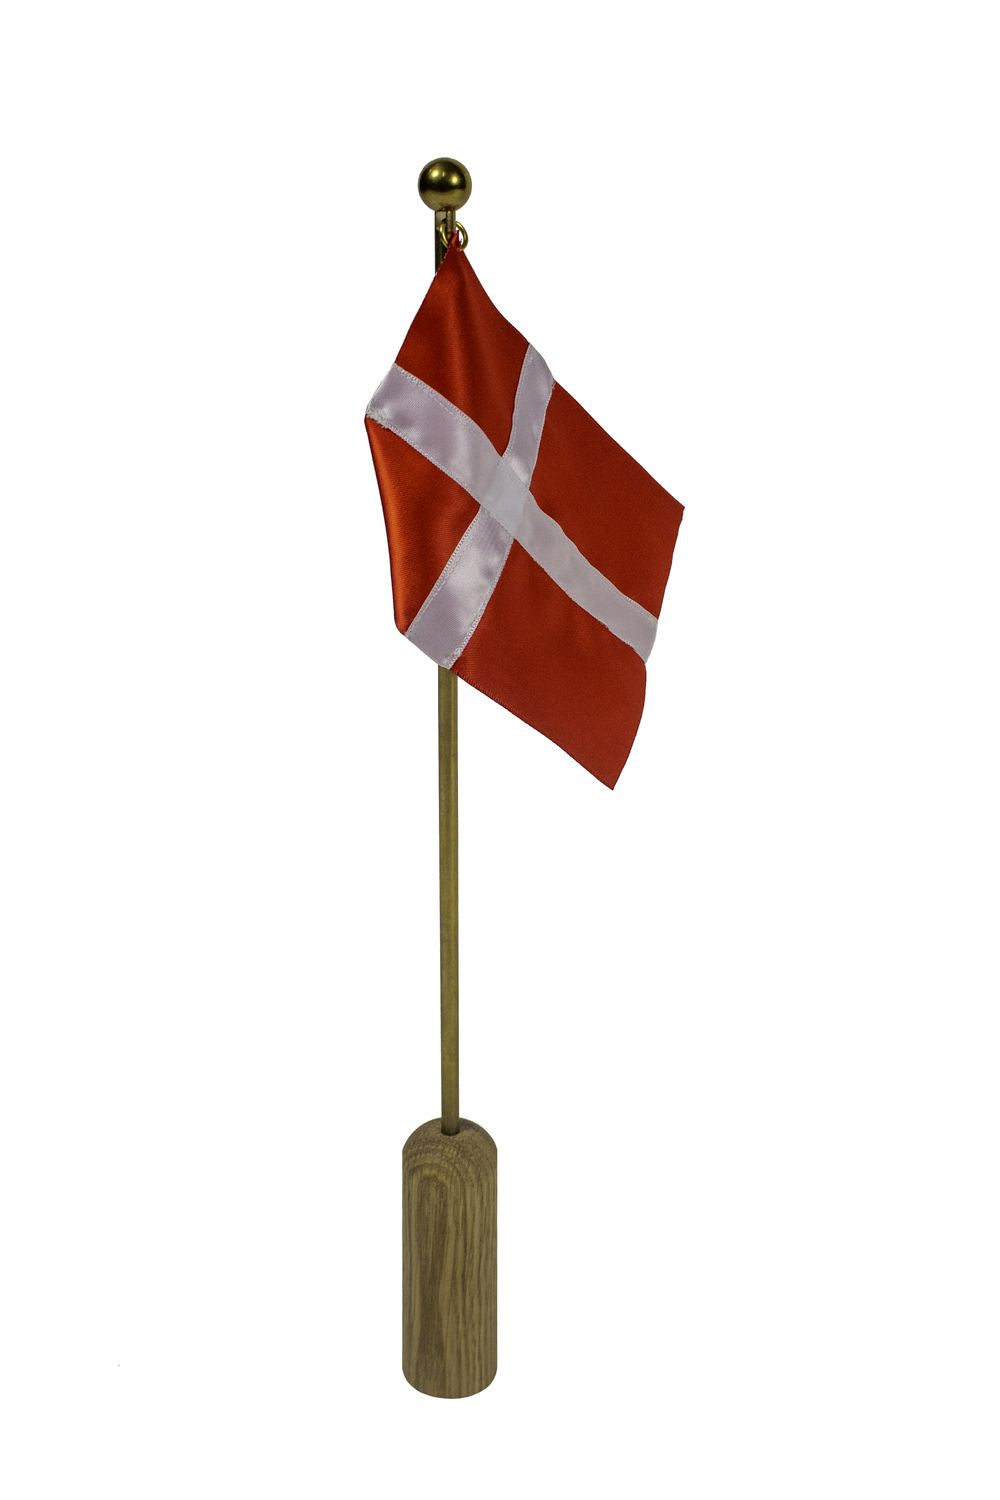 Nábytek Andersen slaví dánskou vlajku H40 cm